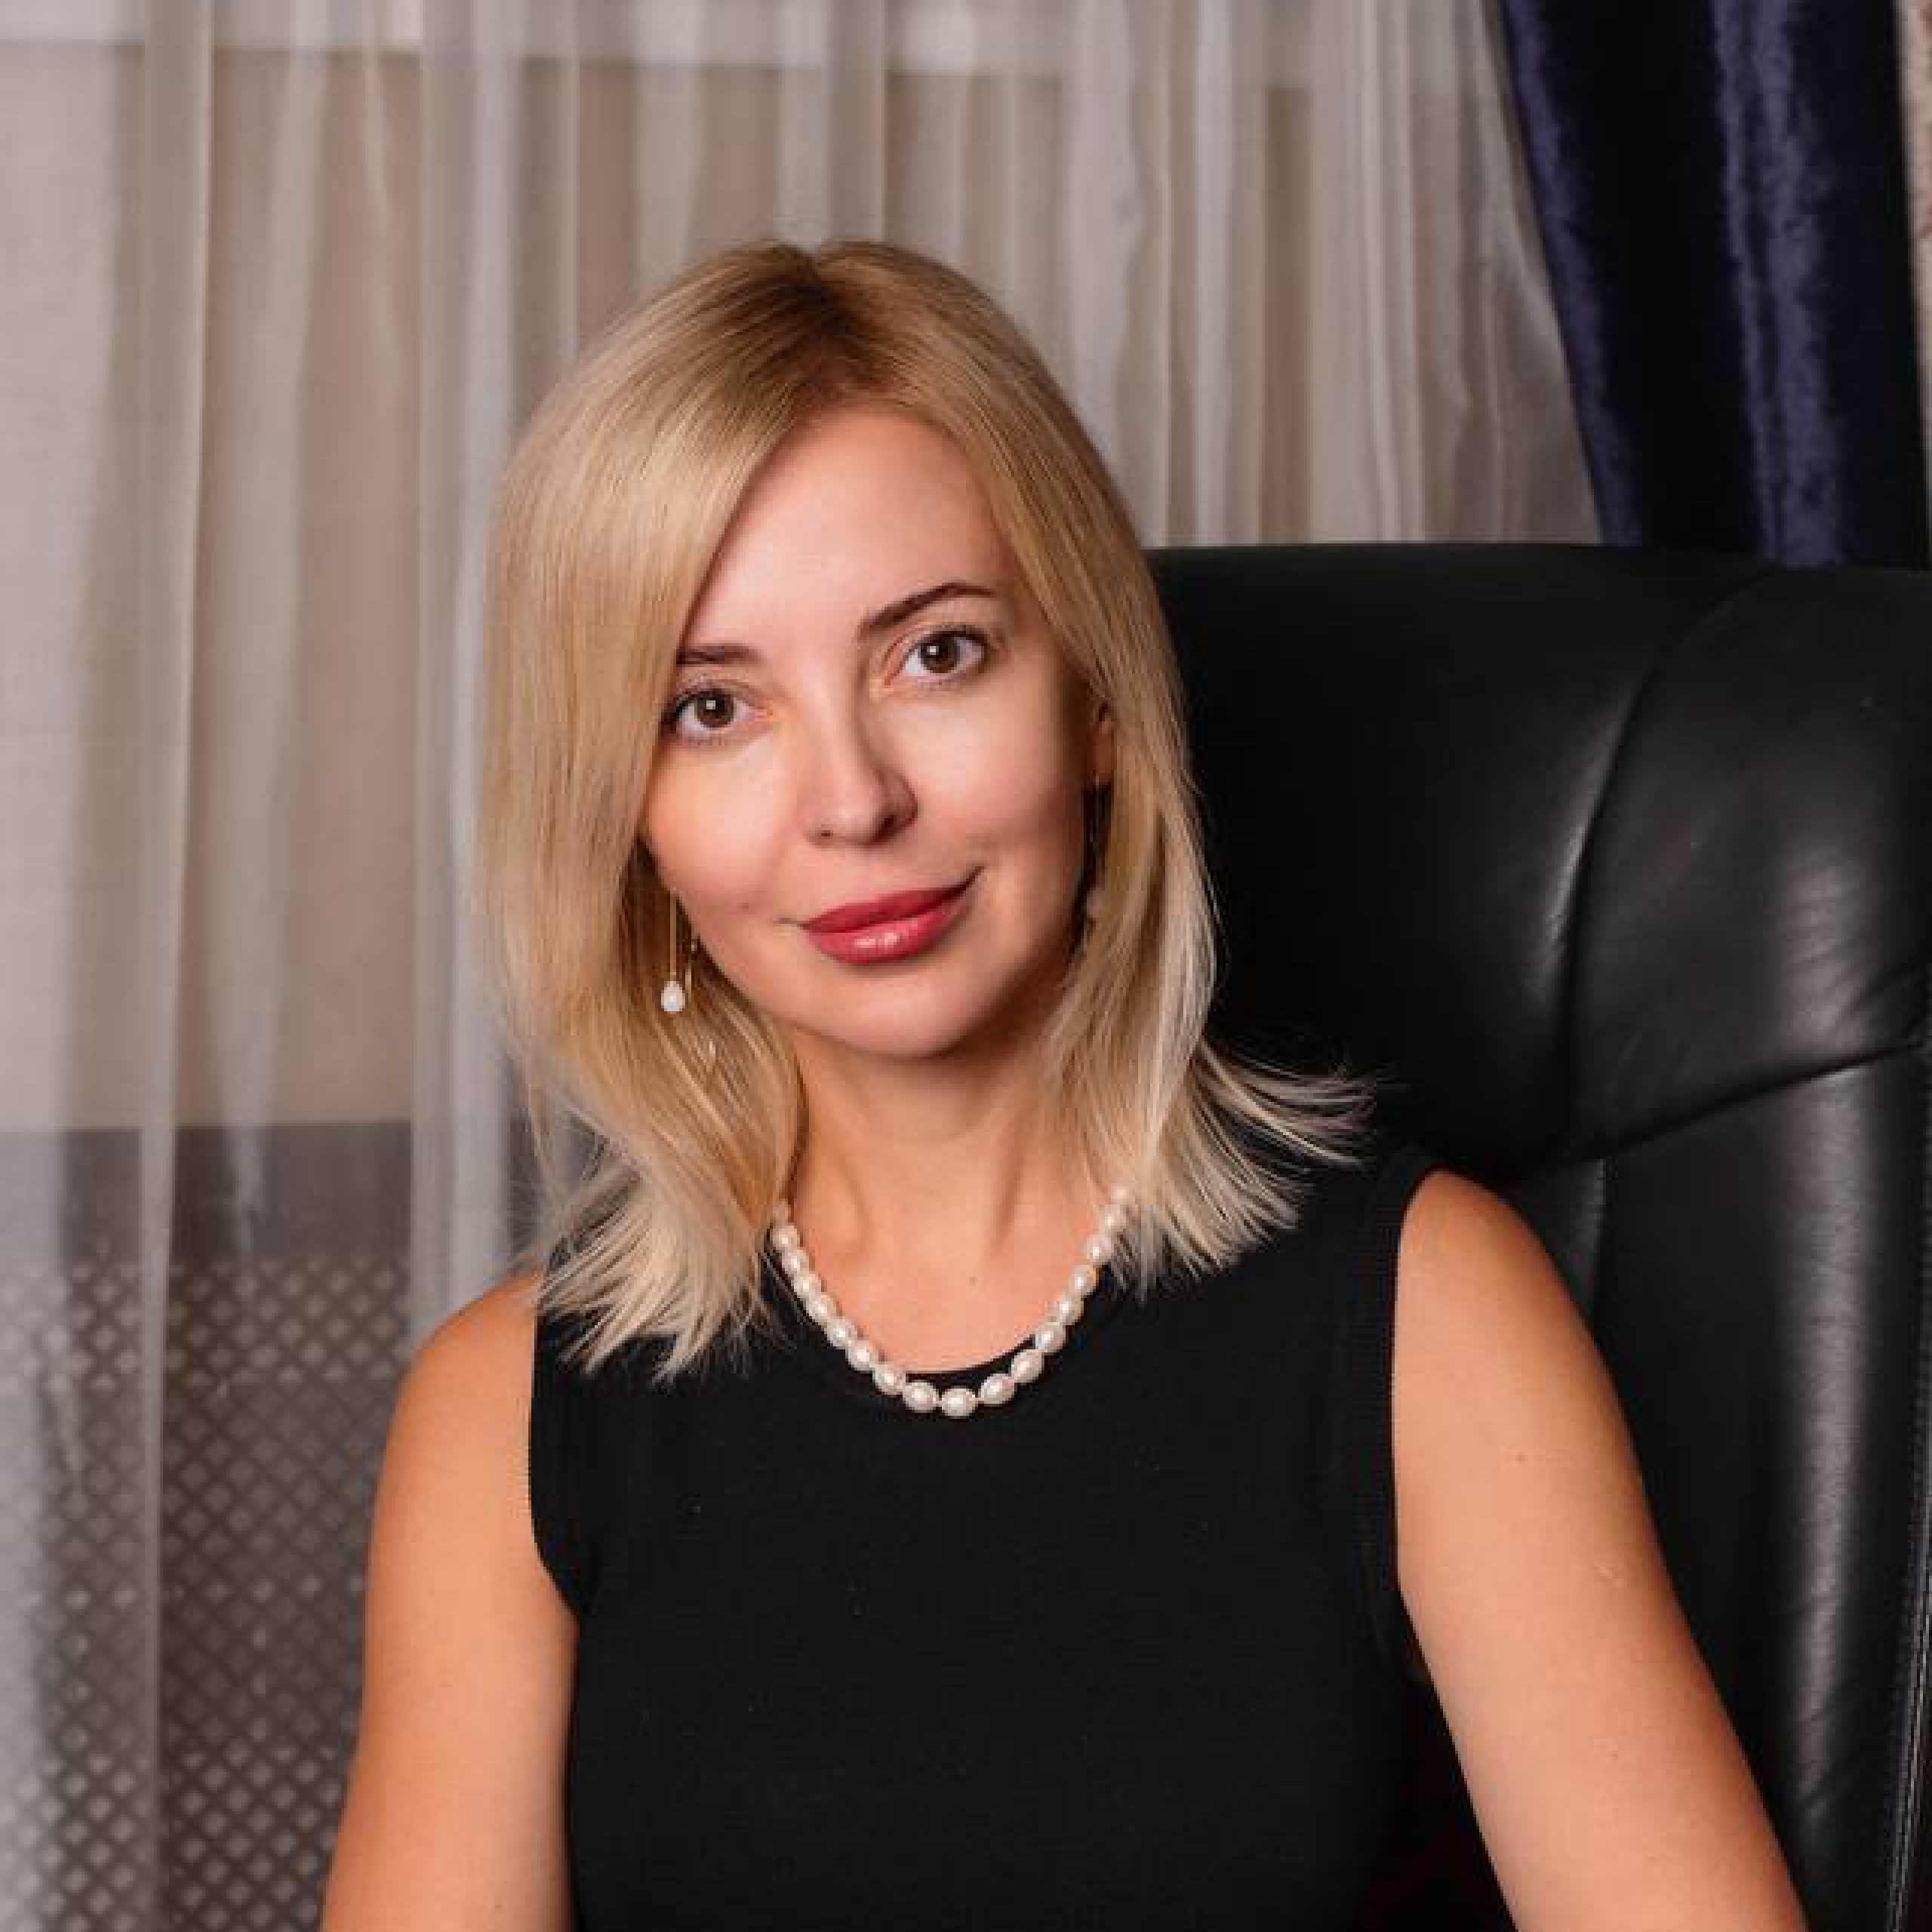 Юлия Аксенова